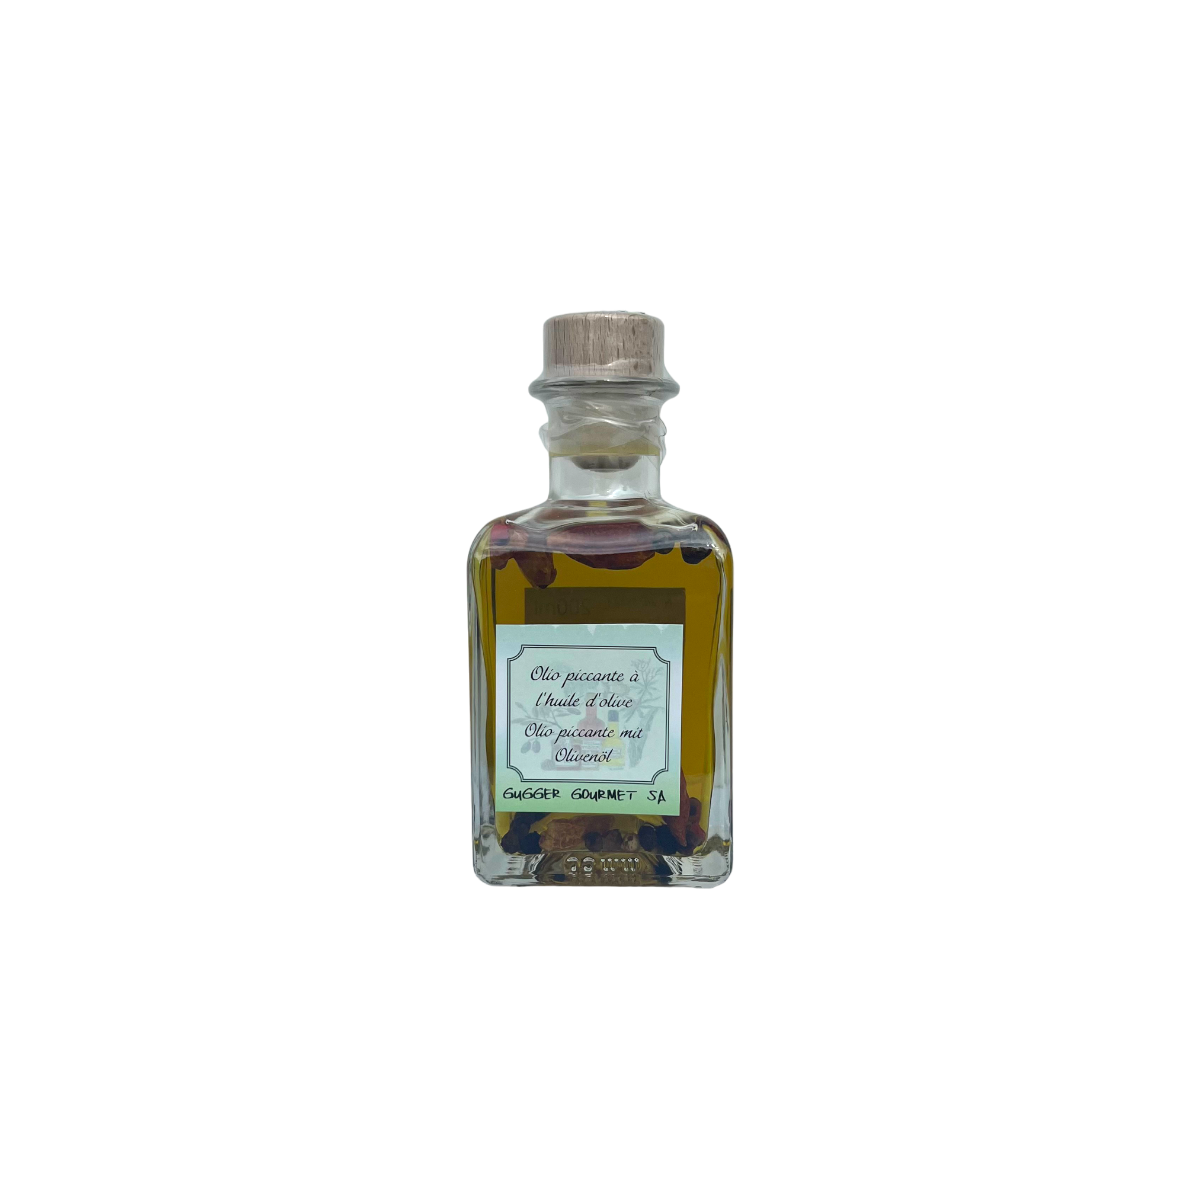 Olio Piccante mit Olivenöl